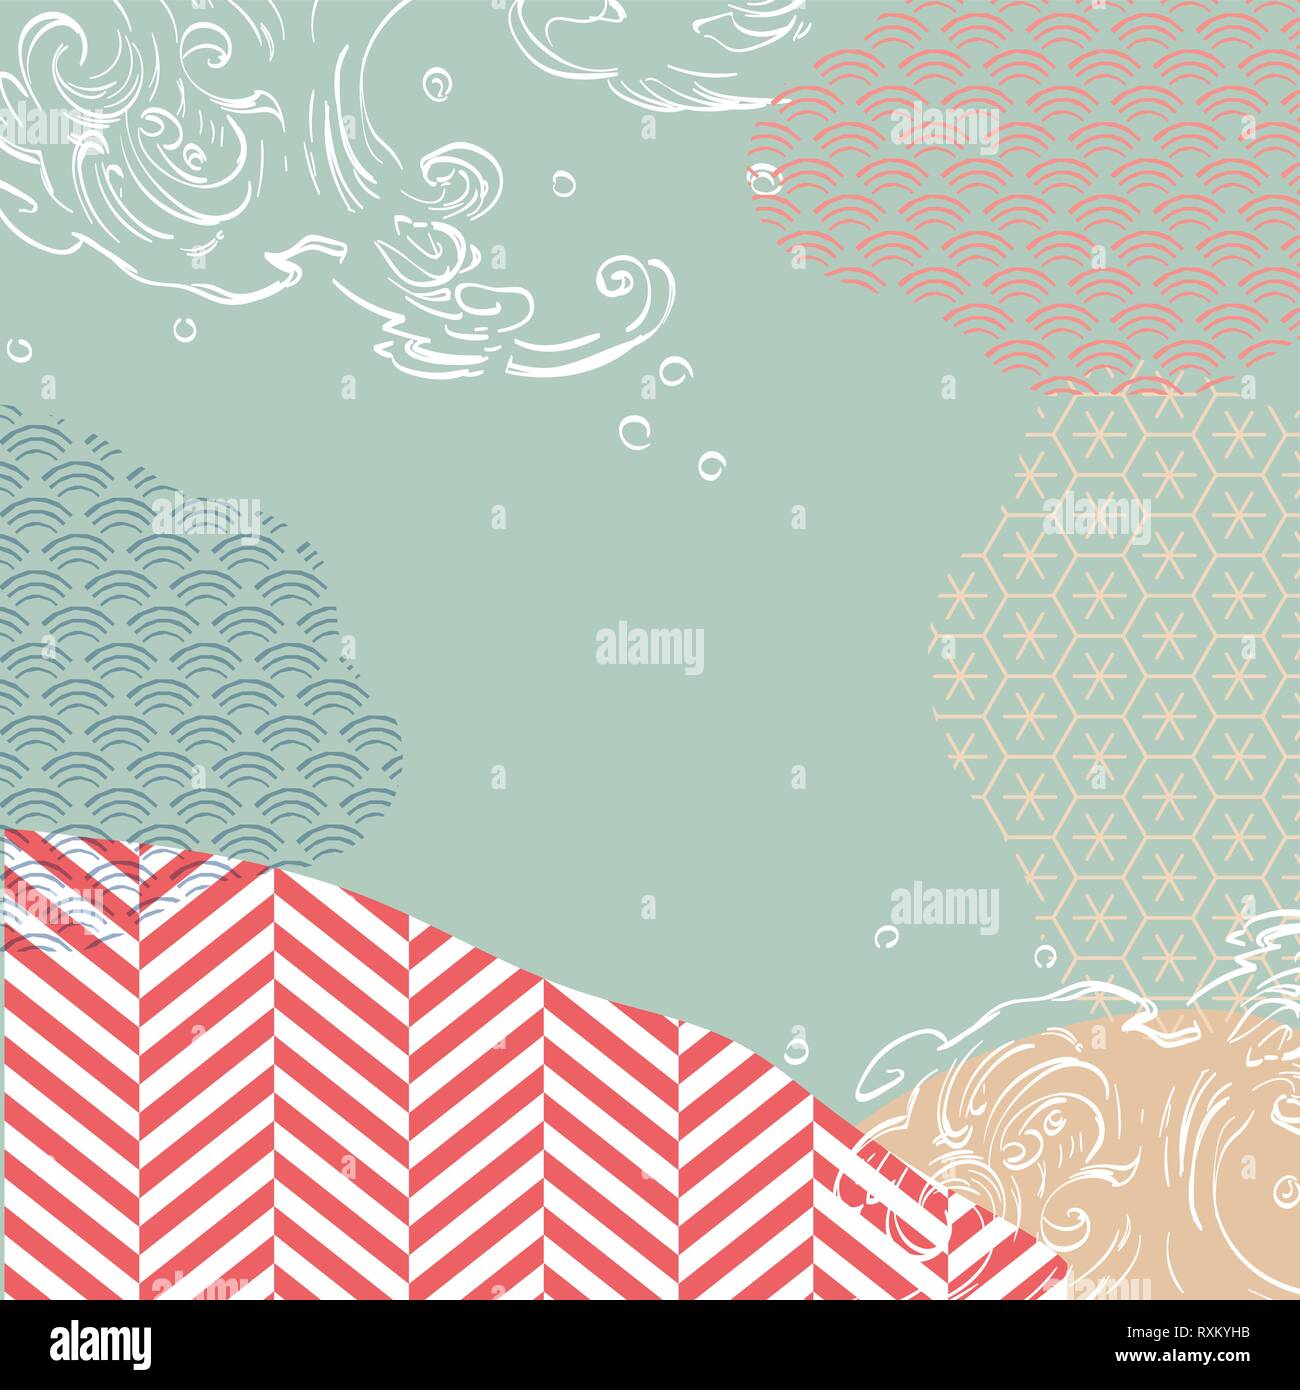 Japanische Schablone Vektor. Cloud Form mit geometrischen Muster Hintergrund. Süße rosa Farbe Thema. Stock Vektor